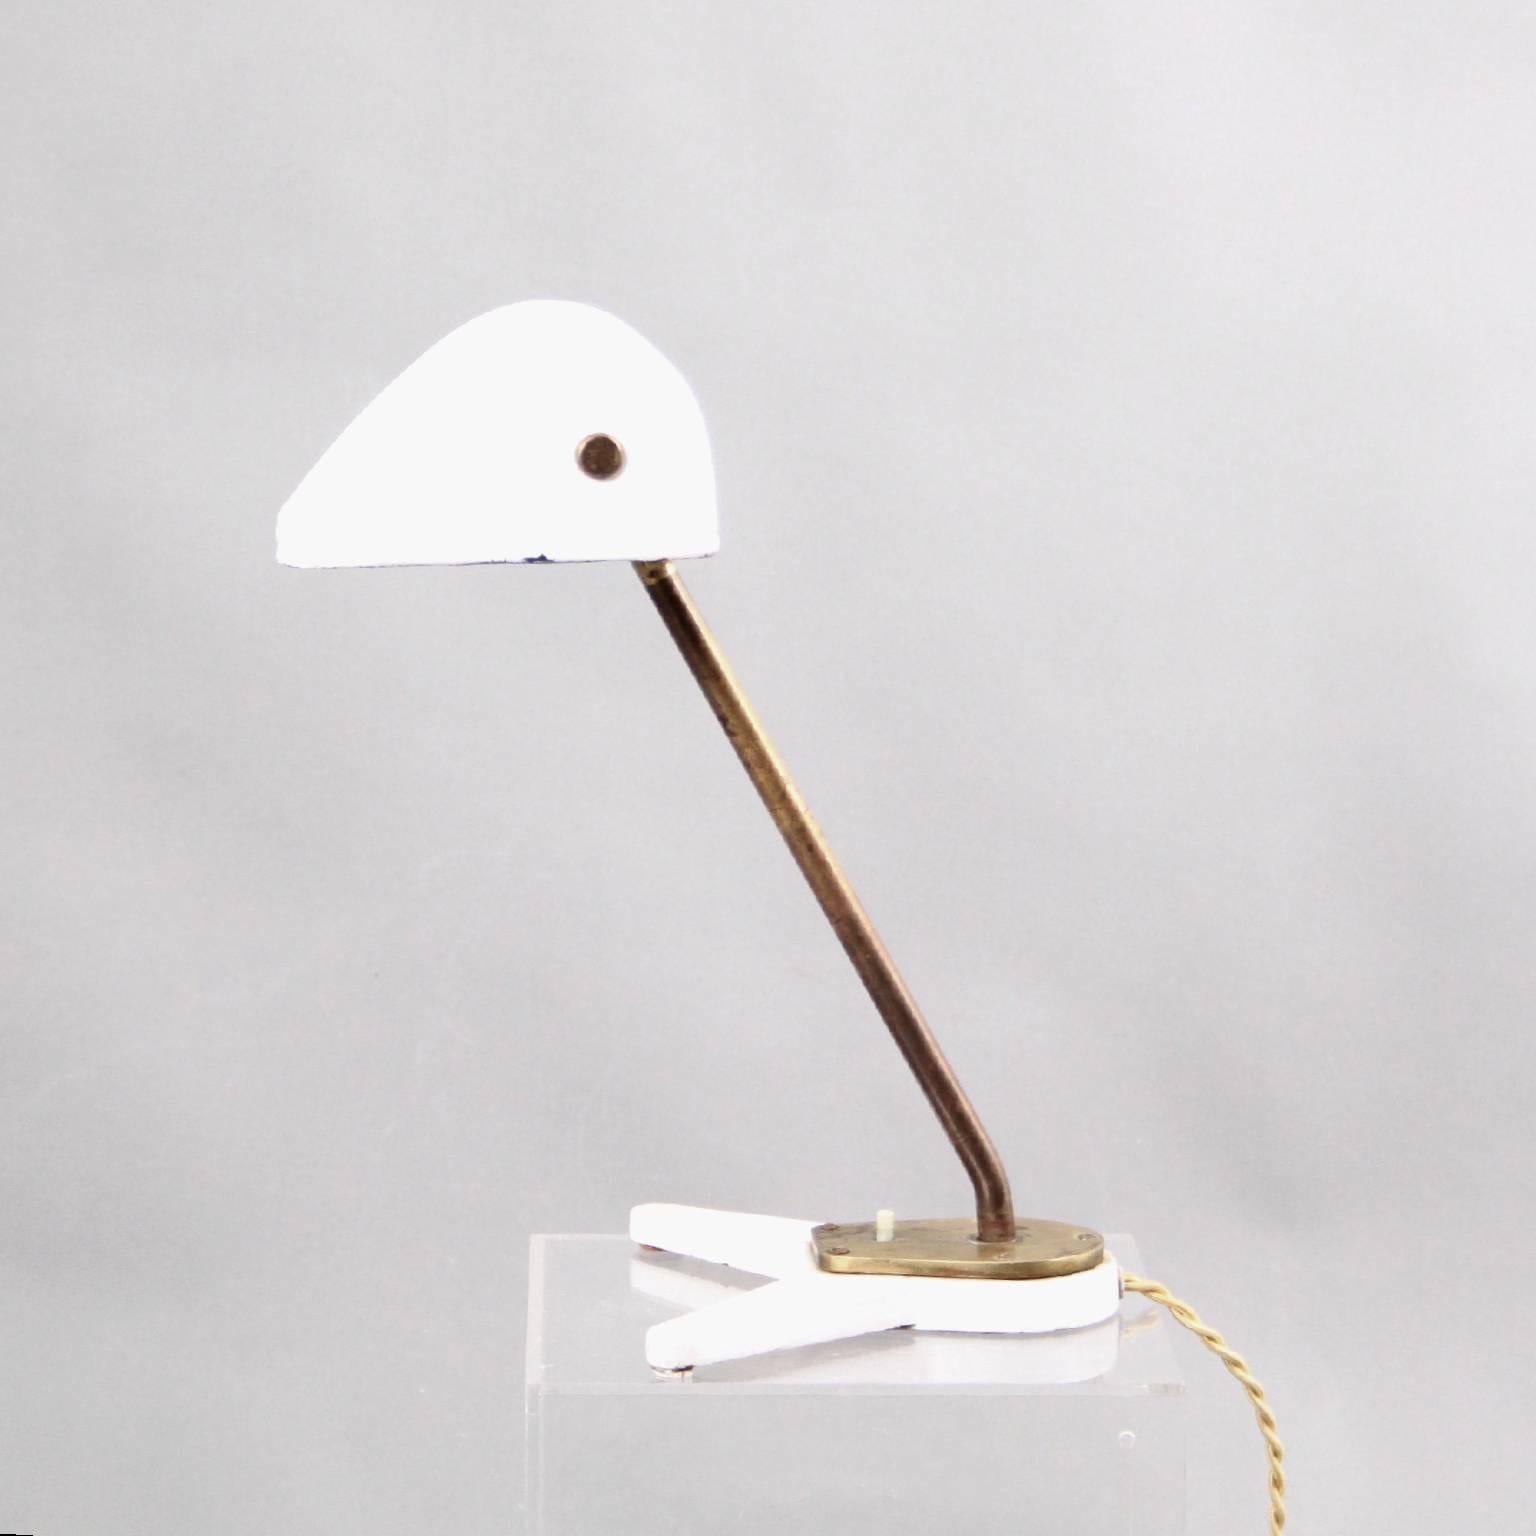 Arne Jacobsen und Hans J. Wegner & Hersteller Louis Poulsen
Skandinavische Moderne

Eine einzigartige Schreibtischlampe der dänischen Designer-Ikonen Arne Jacobsen und Hans J. Wegner. 

Diese Schreibtischlampe wurde für das berühmte Rathaus von